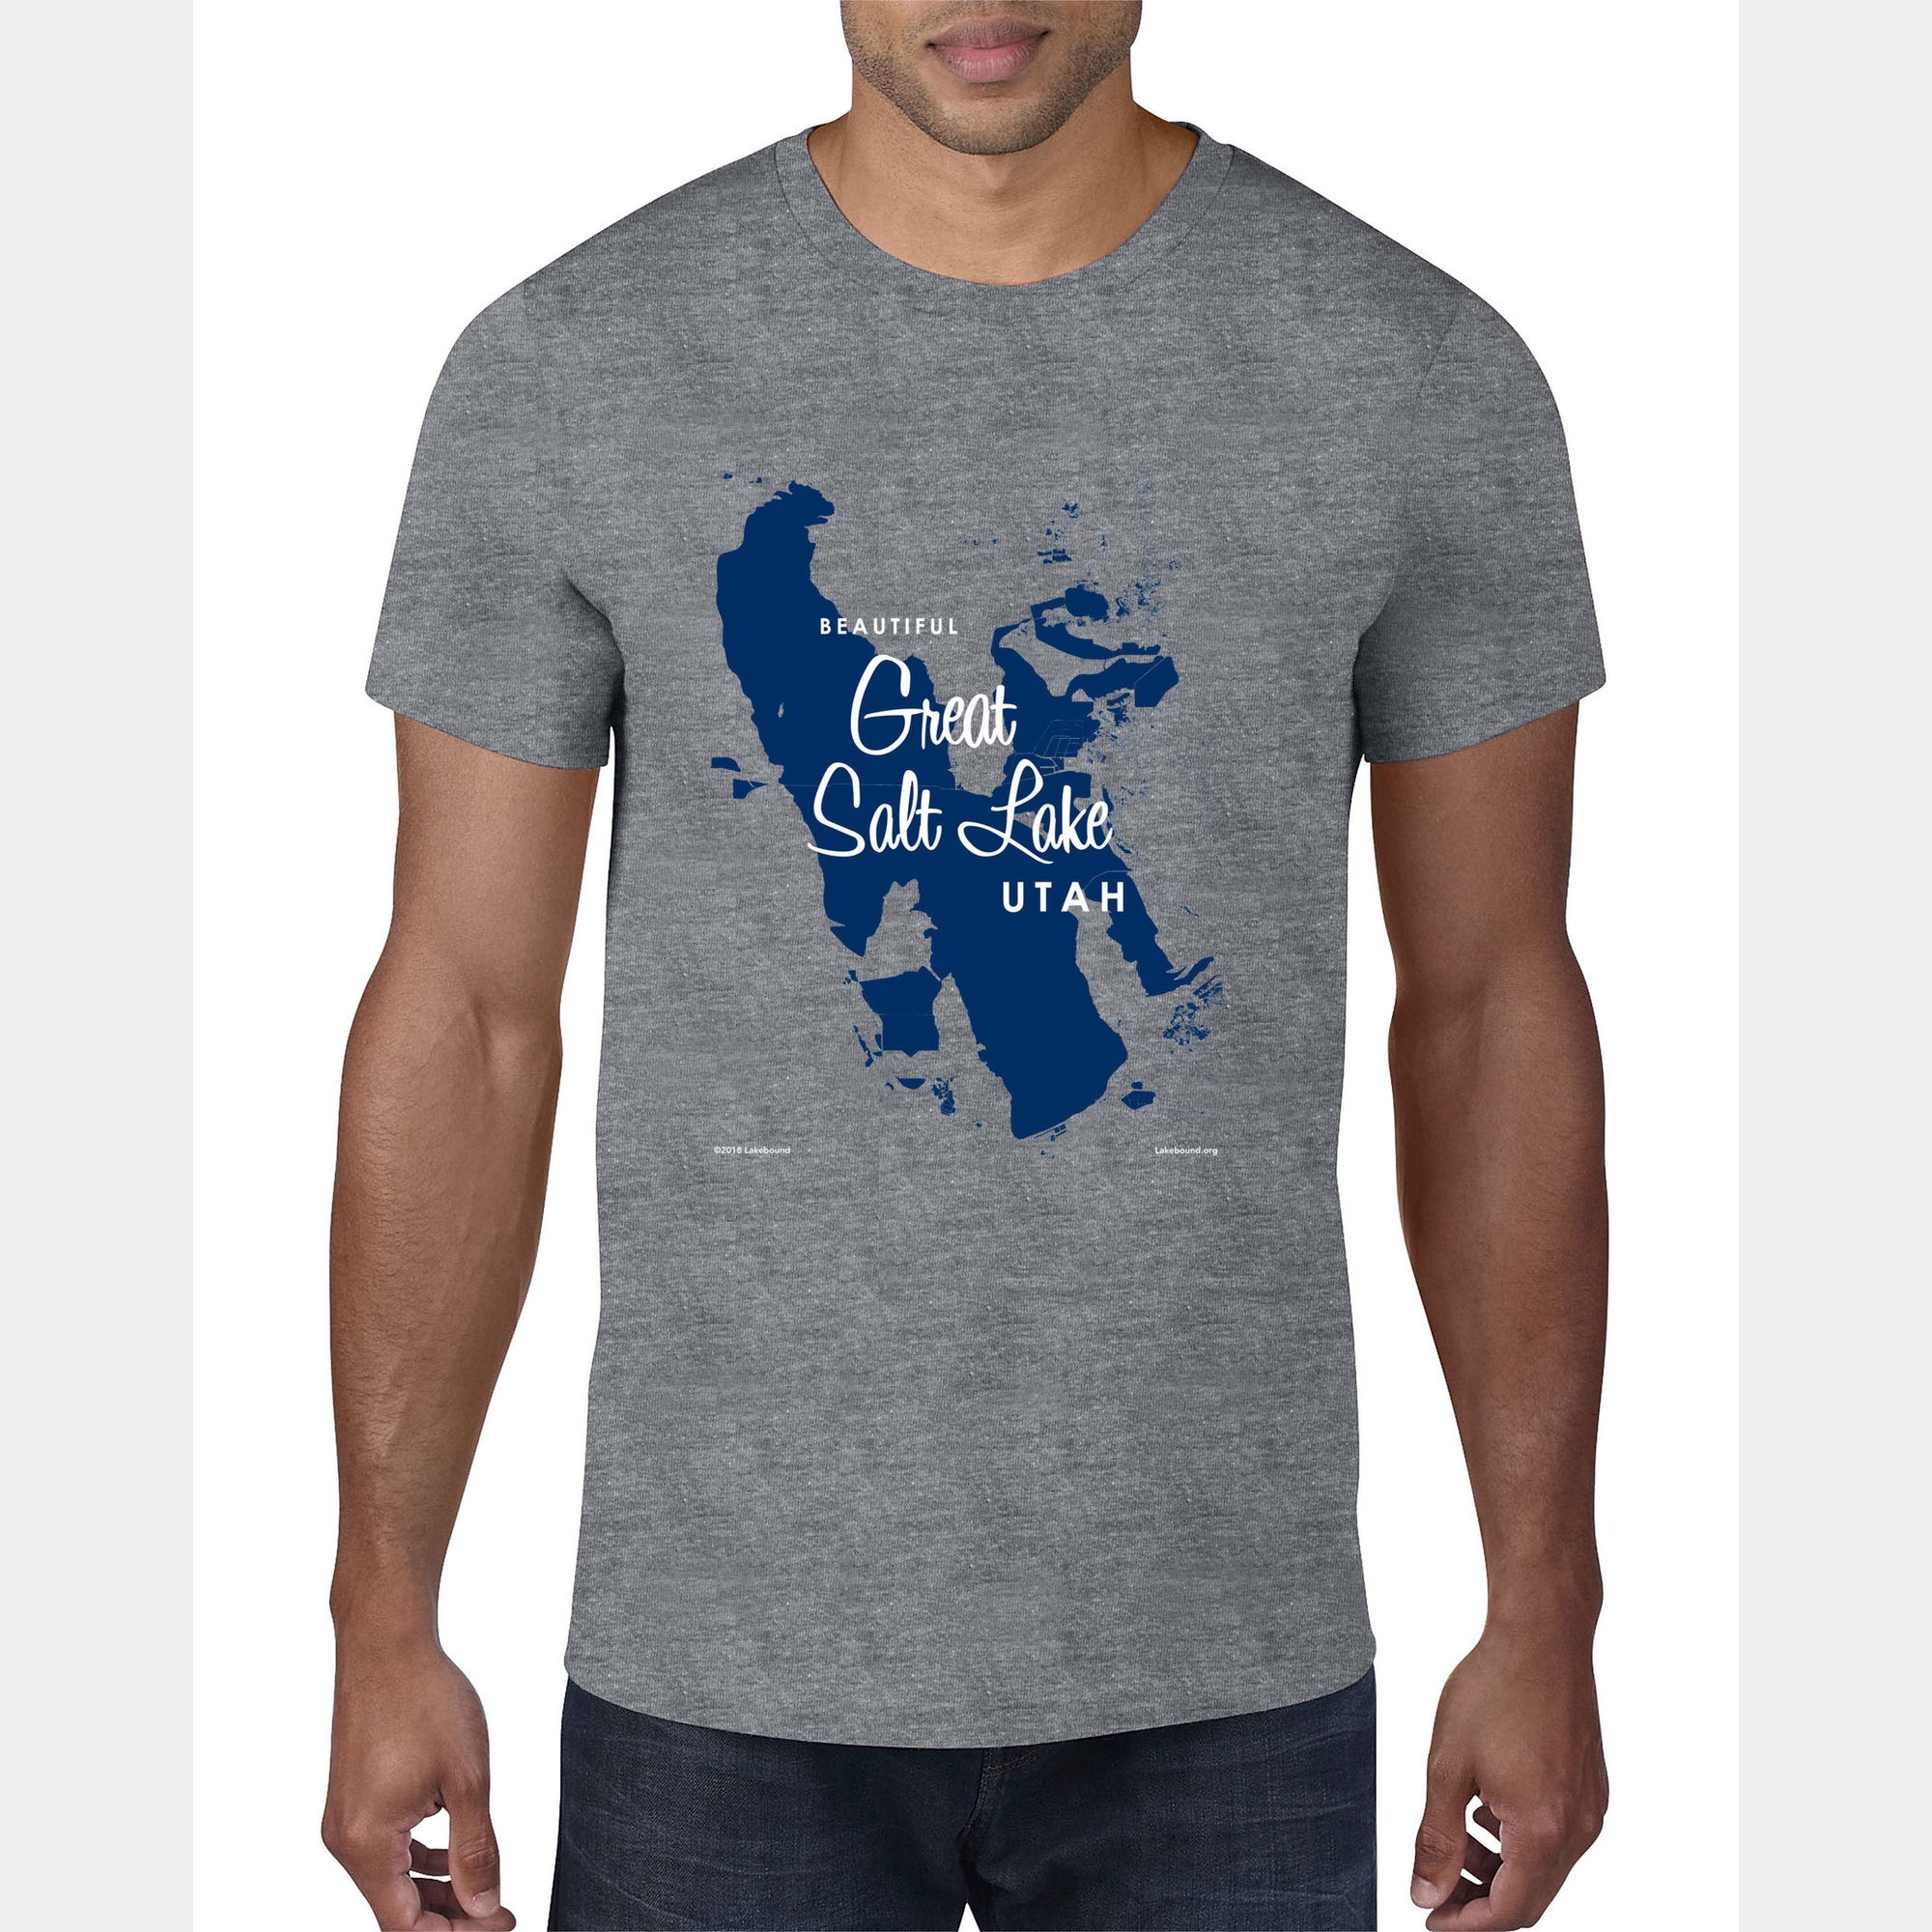 Great Salt Lake Utah, T-Shirt